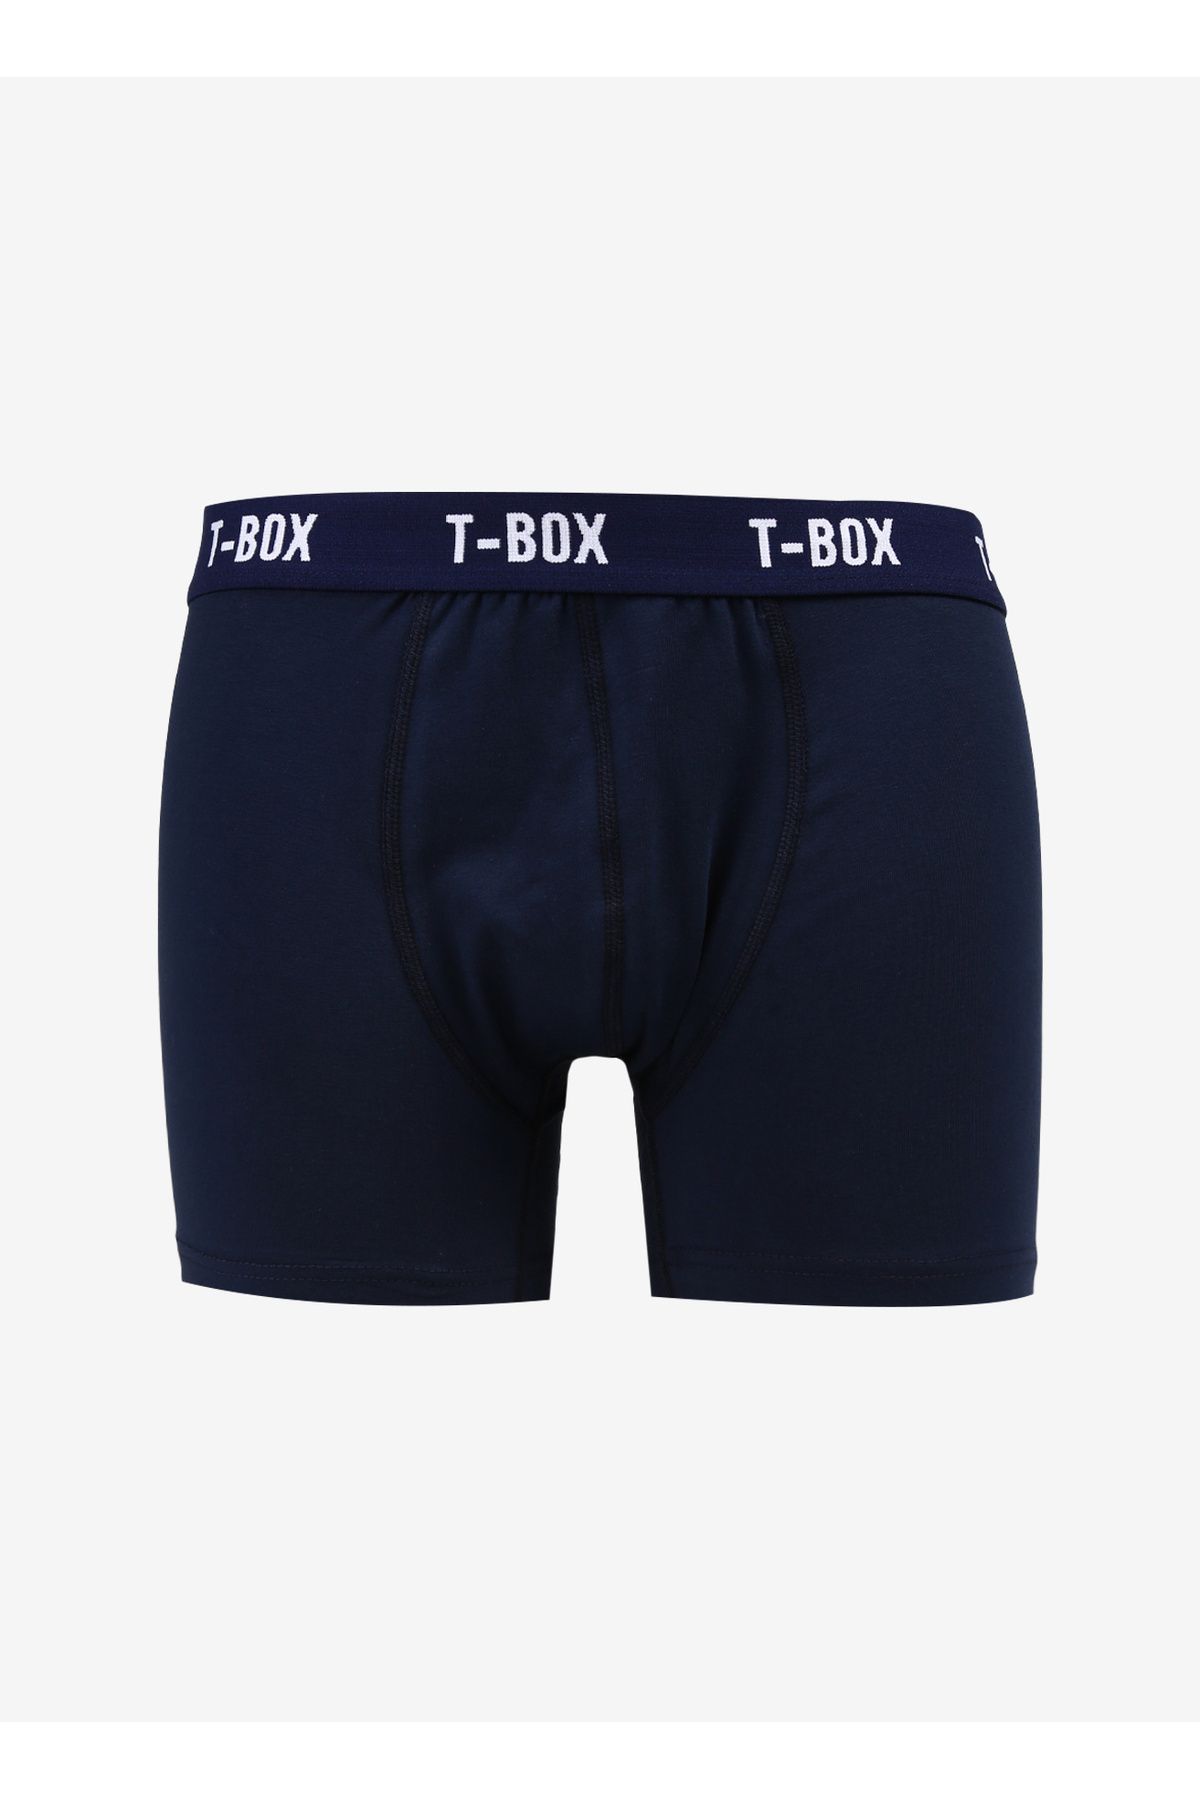 T-Box Boxer, 2XL, Lacivert